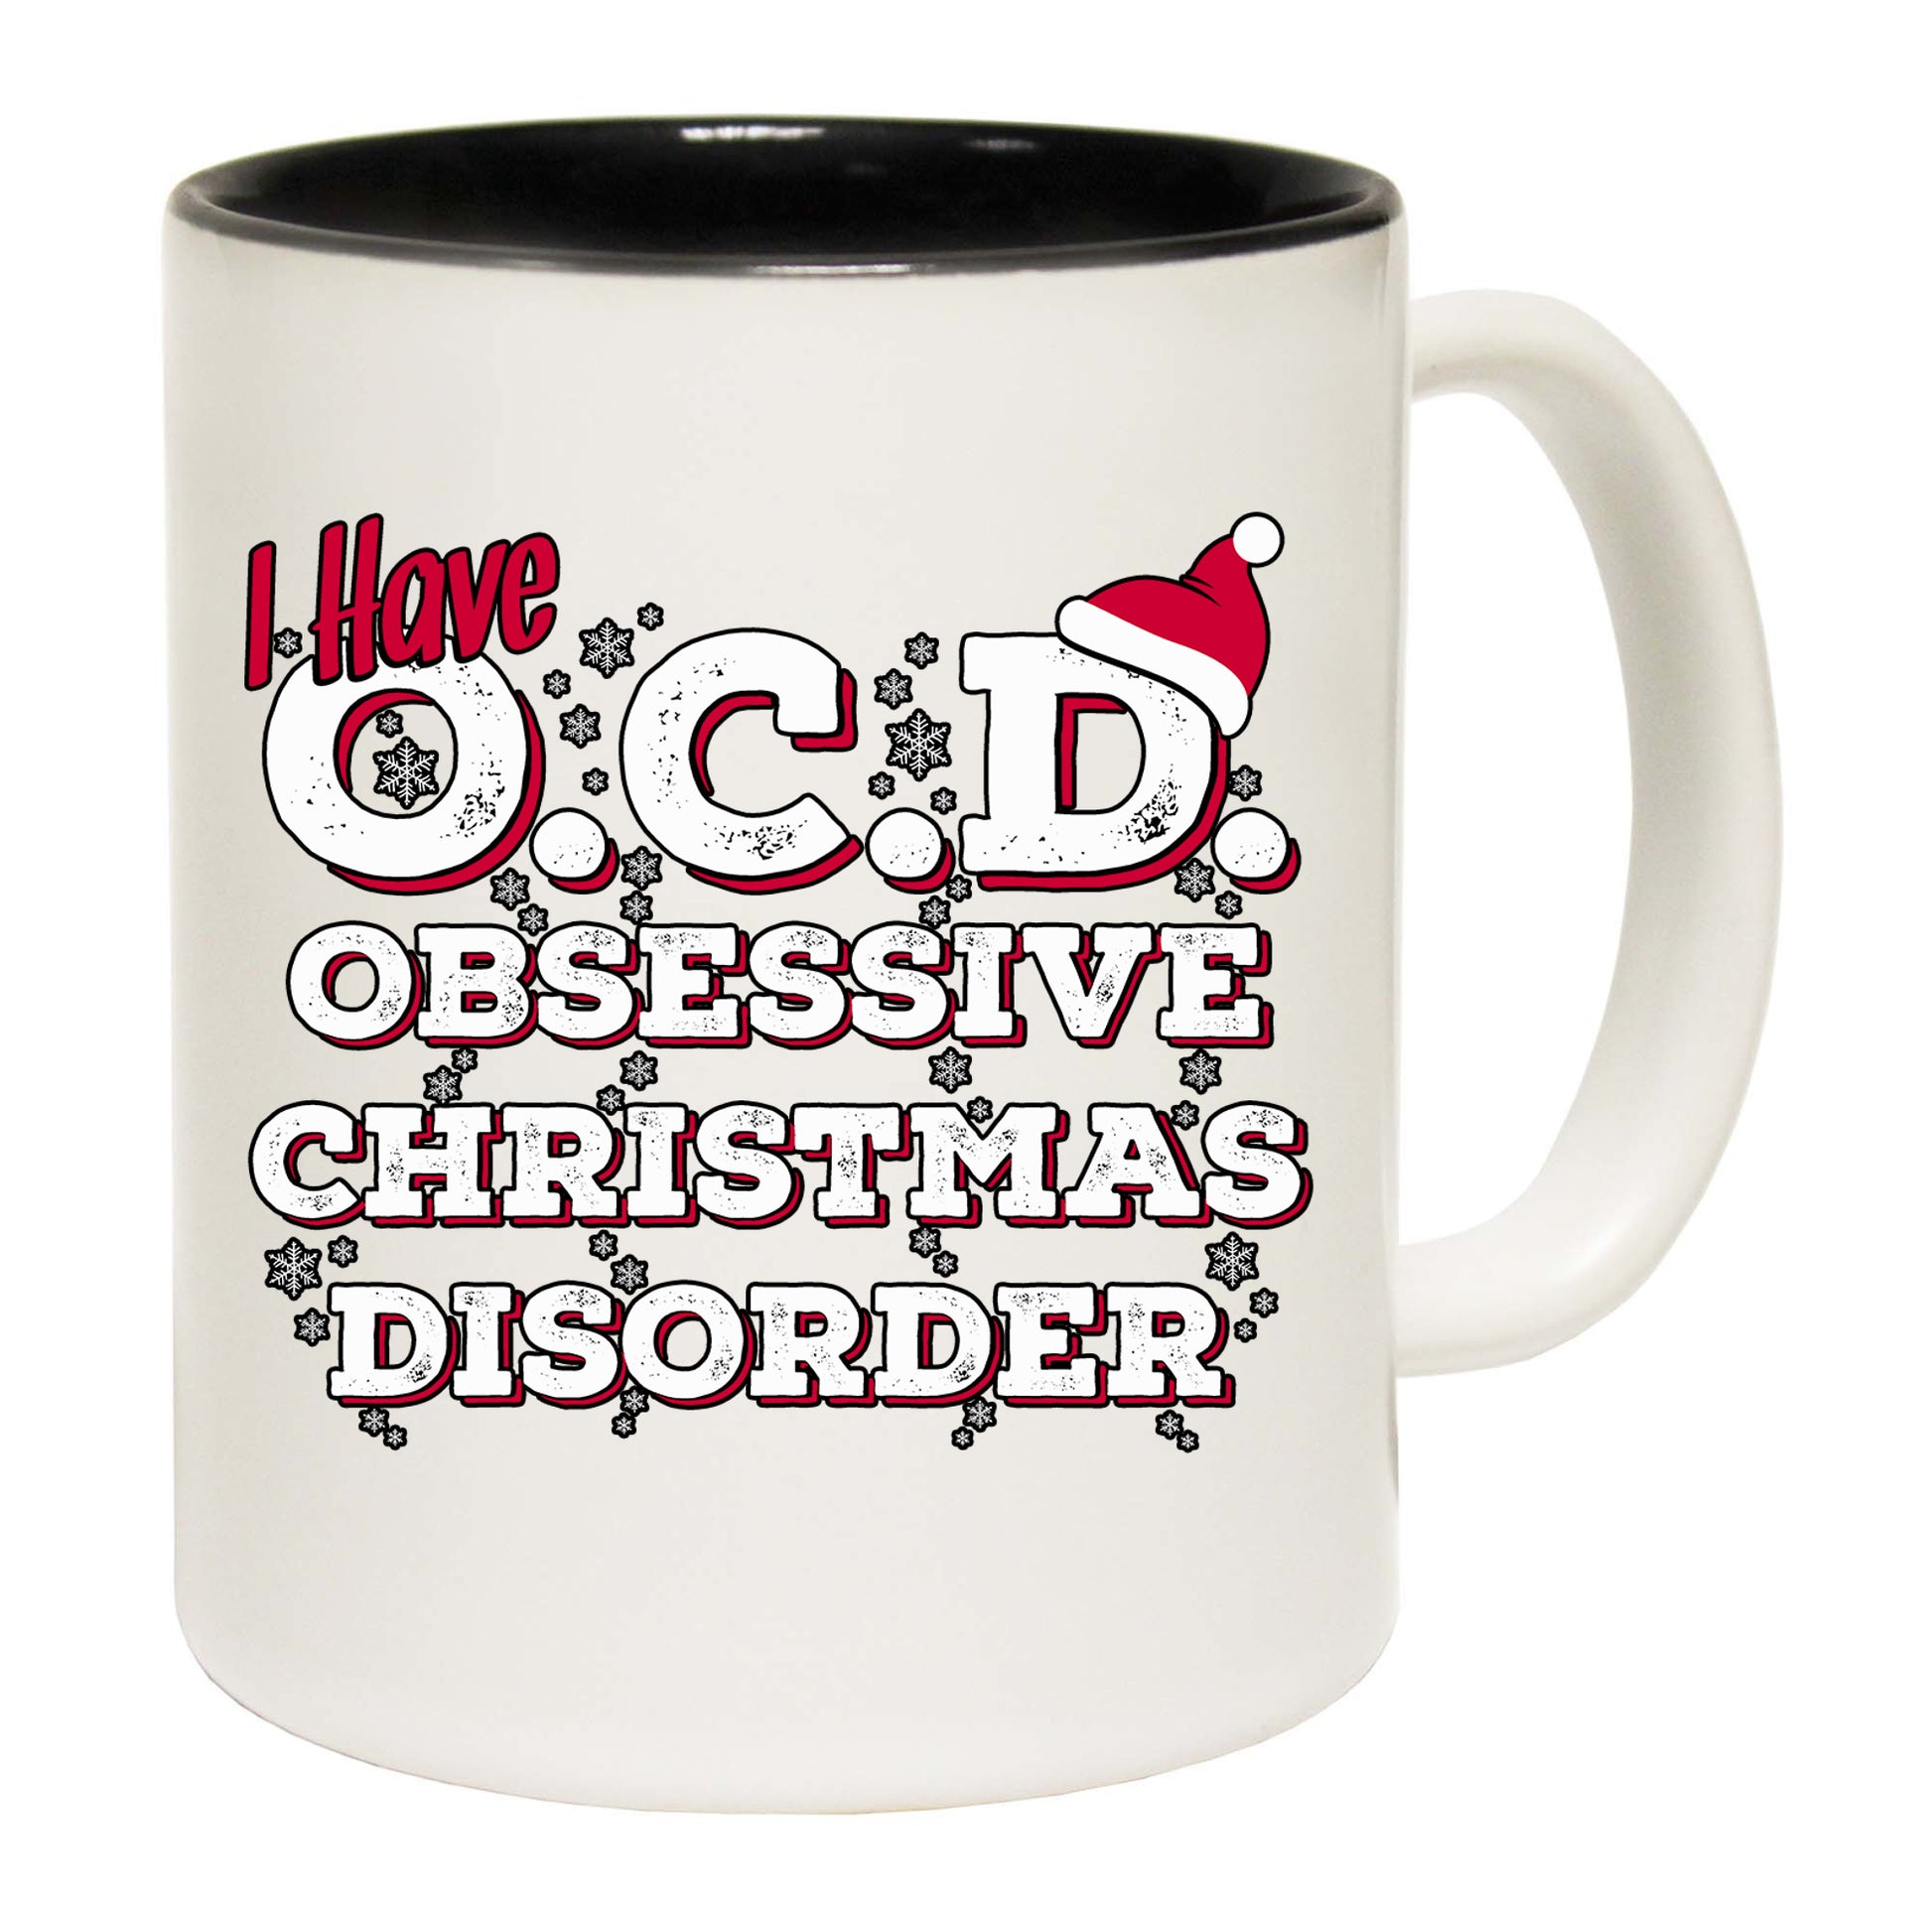 The Christmas Hub - Christmas I Have Ocd Obsessive Christmas Disorder - Funny Coffee Mug